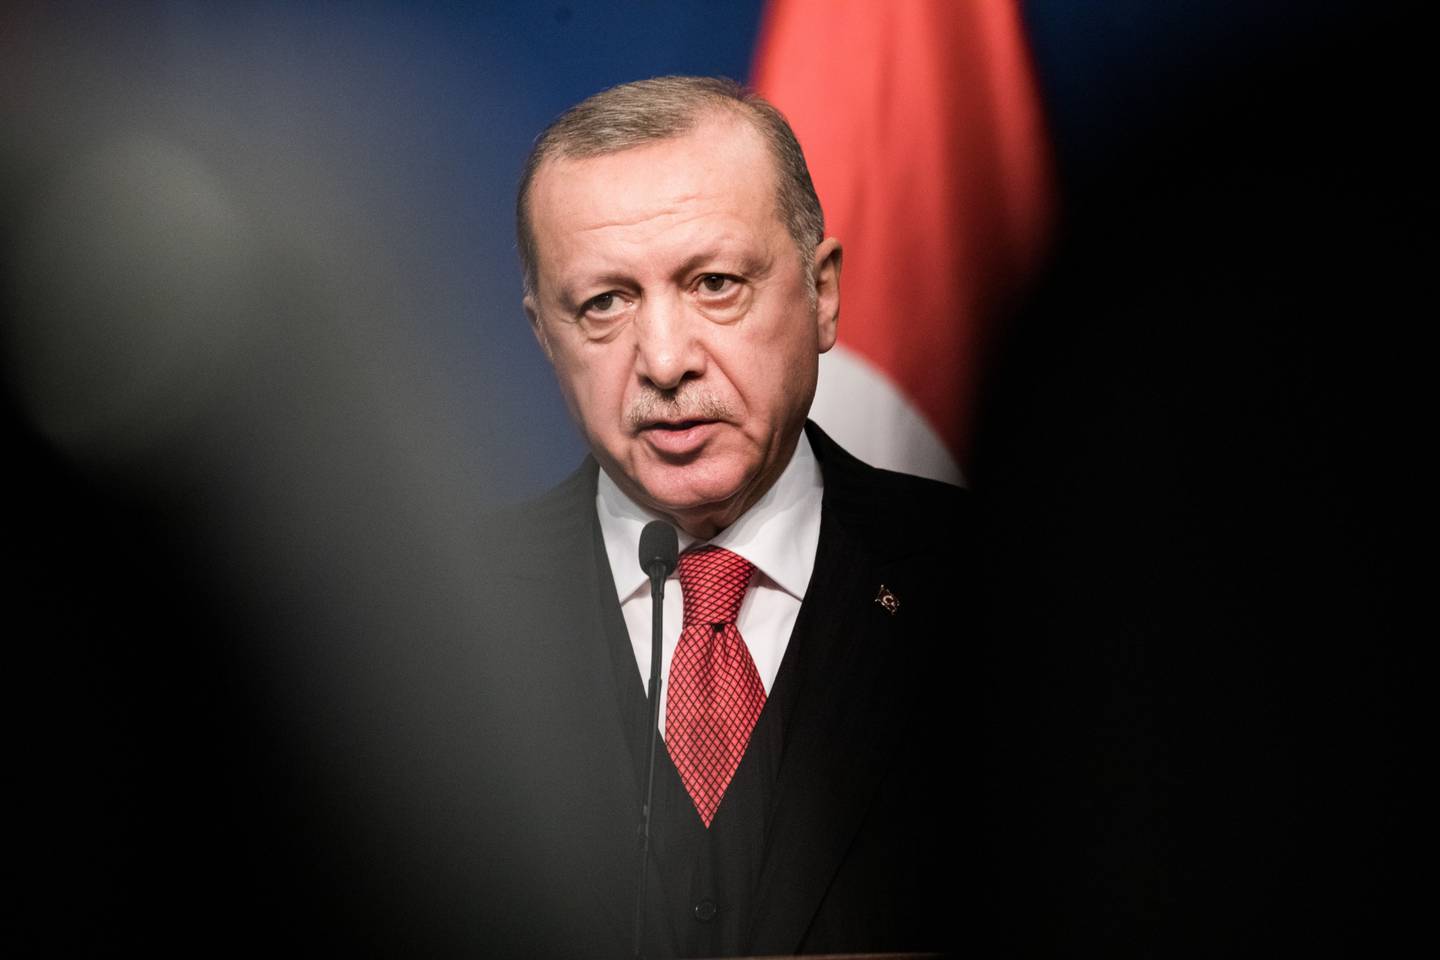 Insultar o presidente acarreta uma pena de prisão de até 4 anos sob o código penal turco